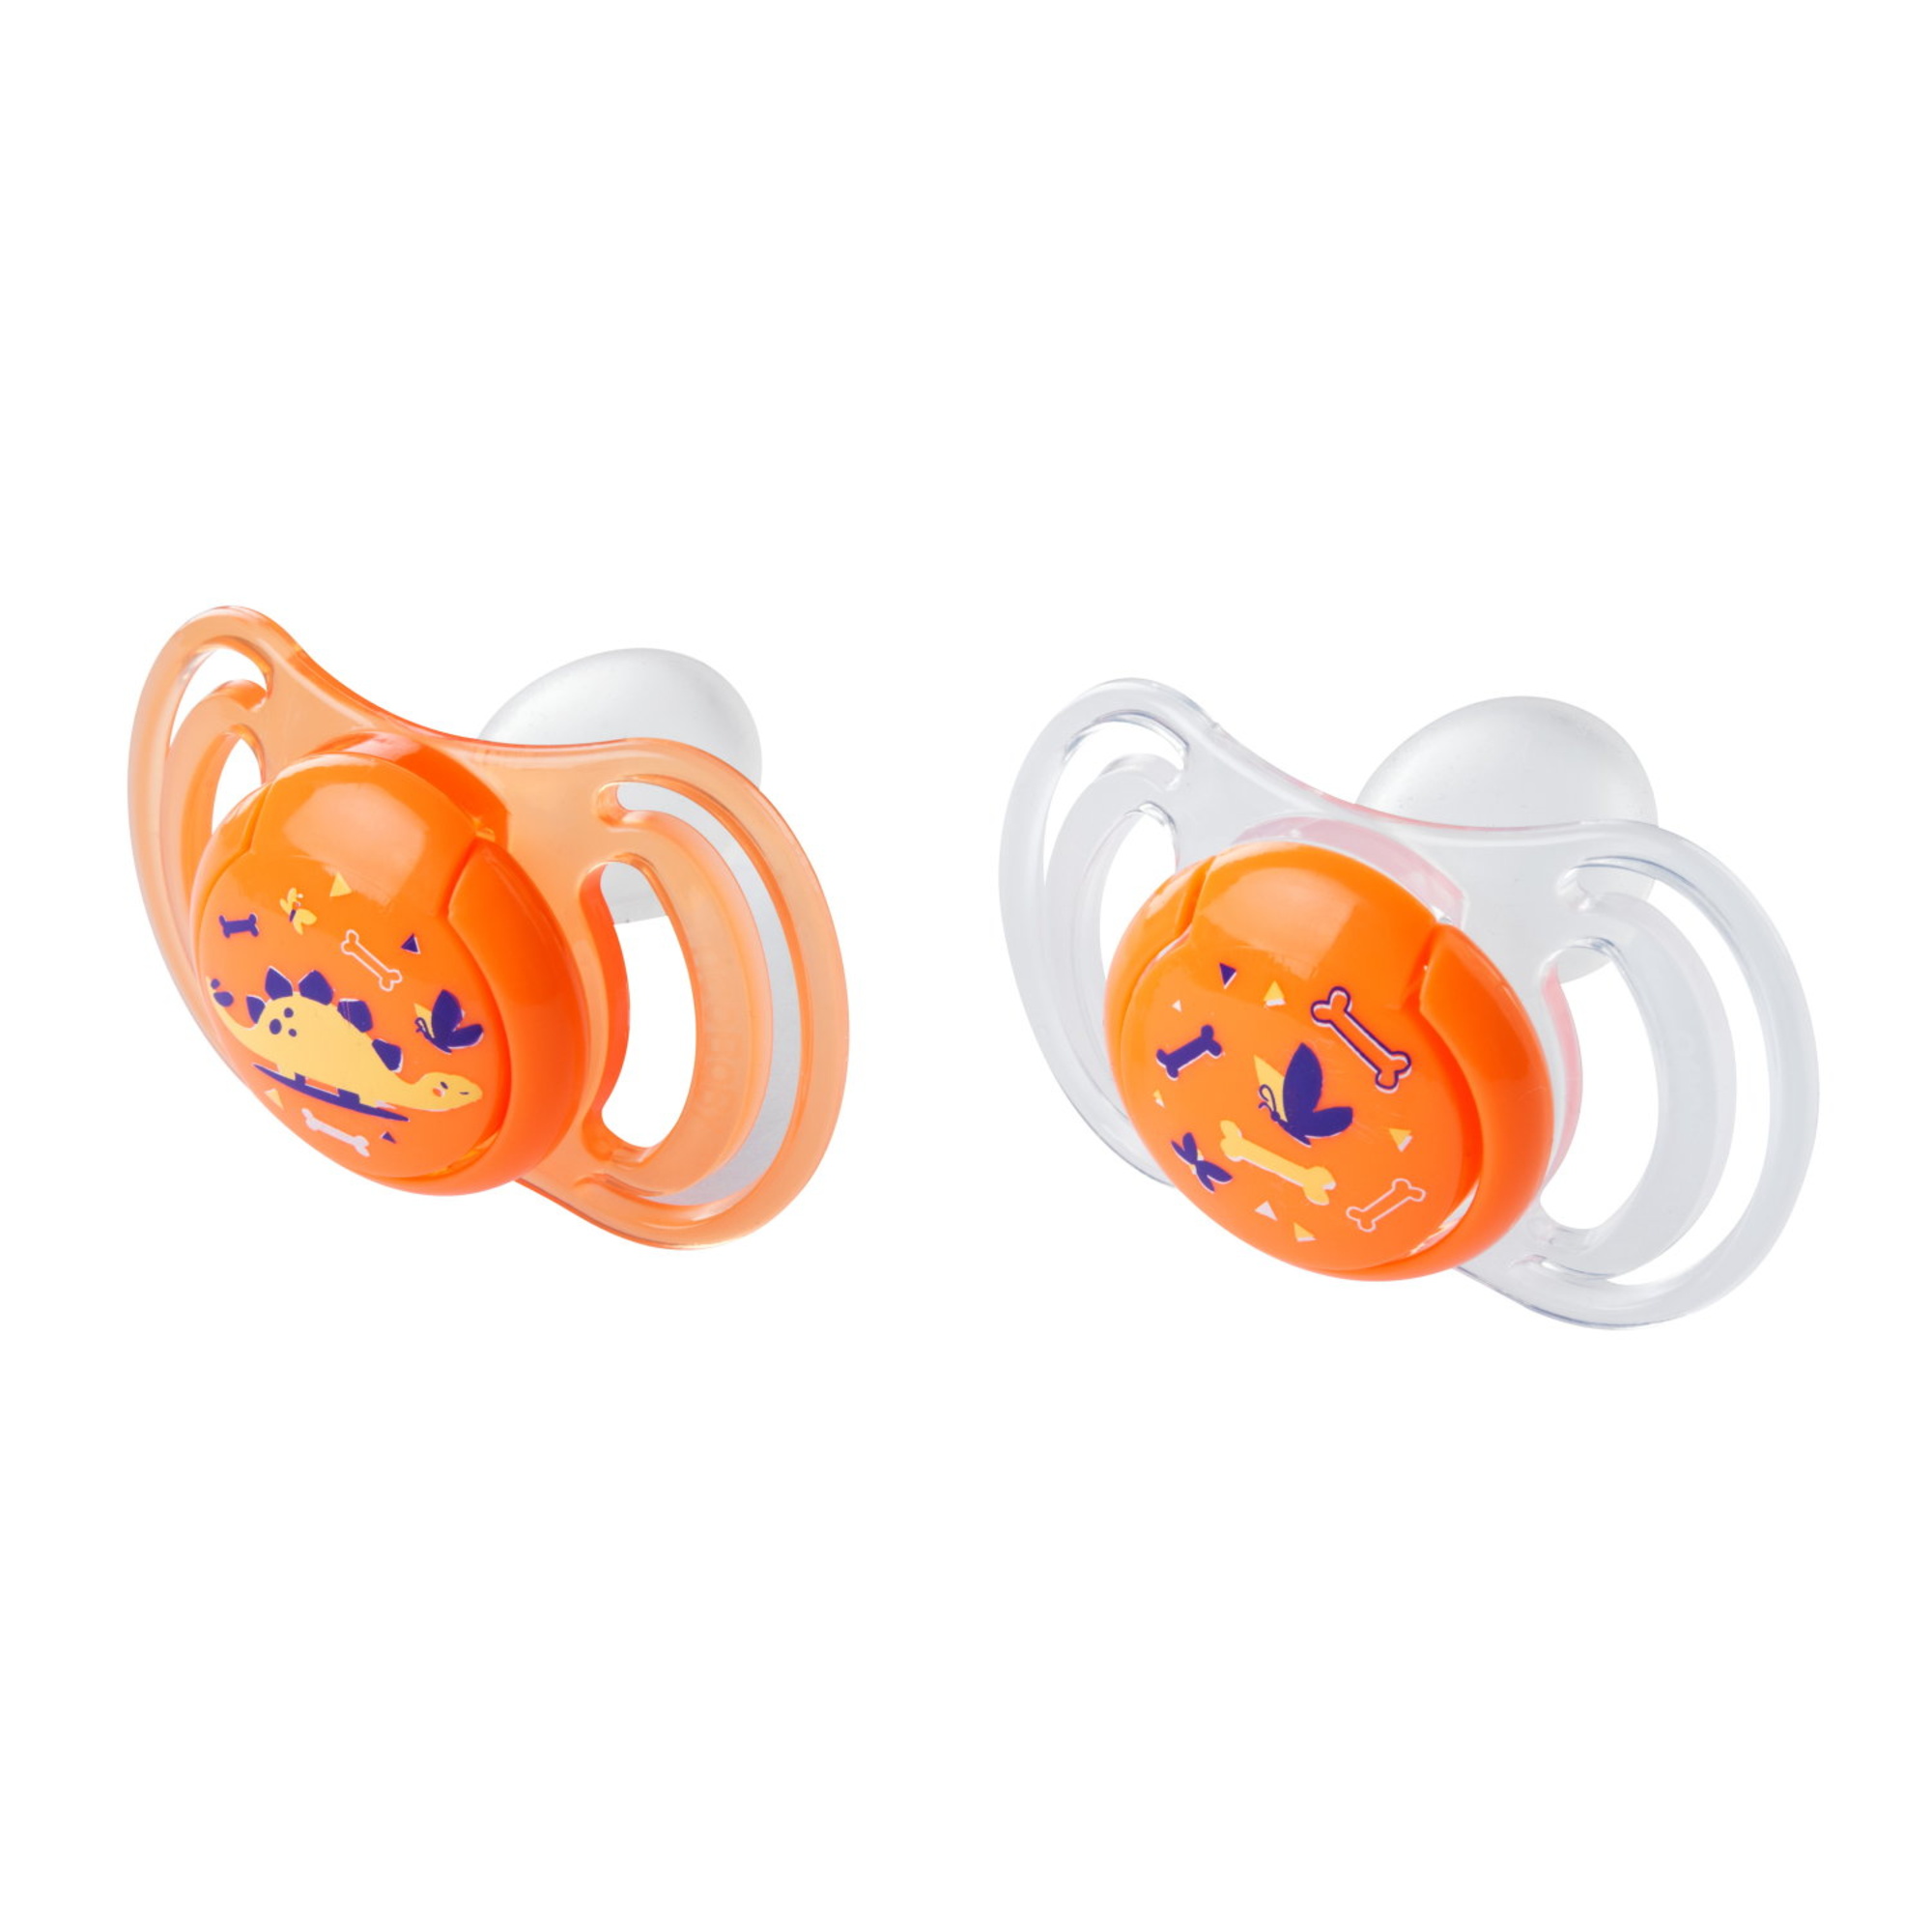 Neobaby  succhietto anatomico silicone mini 0m+ arancione 2pz - NEO BABY